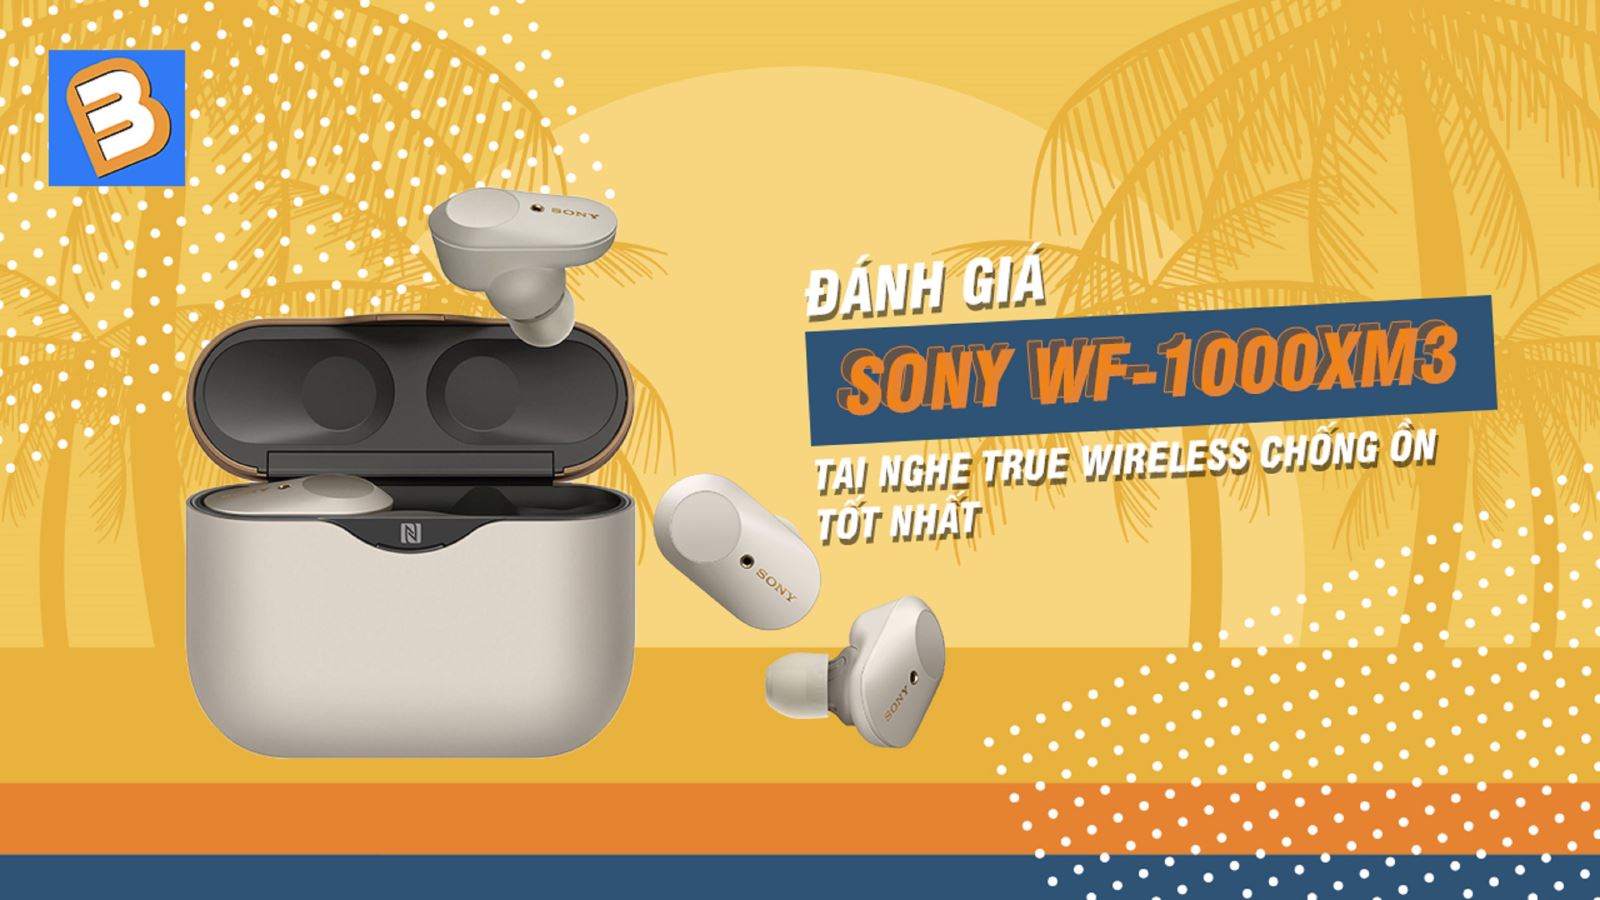 Đánh giá Sony WF-1000XM3: tai nghe true wireless chống ồn tốt nhất